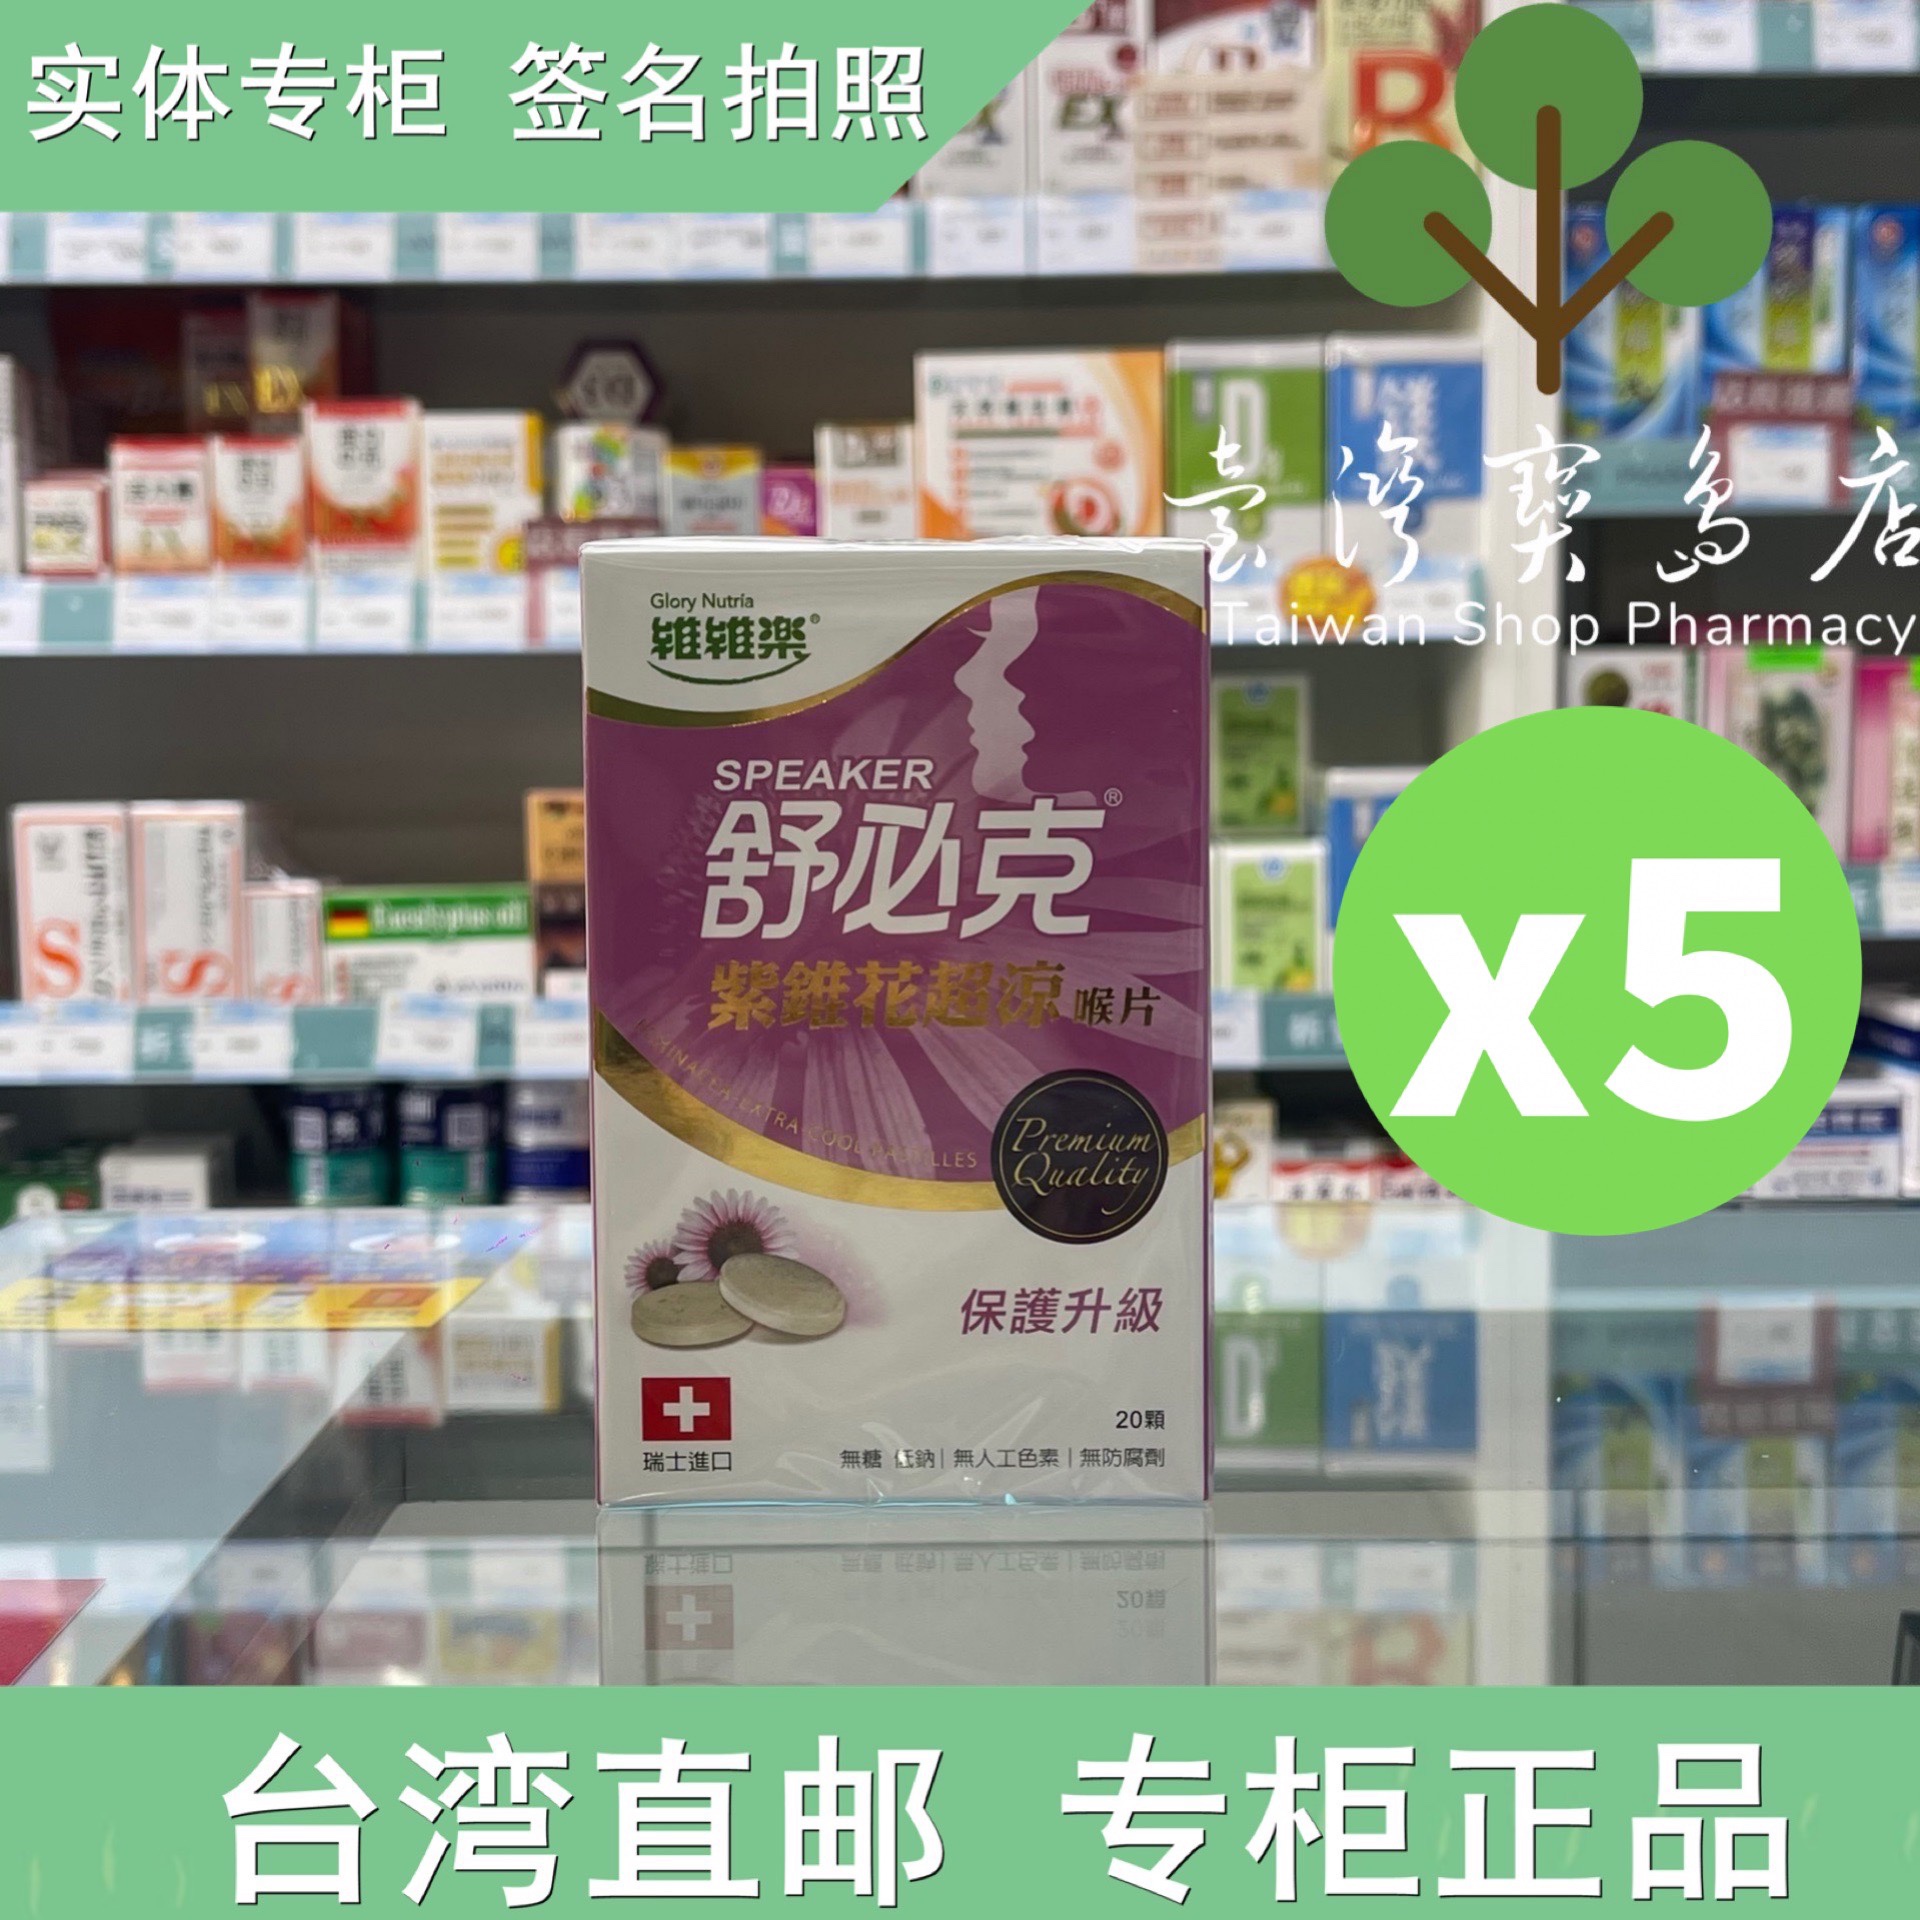 台湾正品直邮 康是美 舒必克紫锥花超凉儿童喉片草莓葡萄喉片糖X5